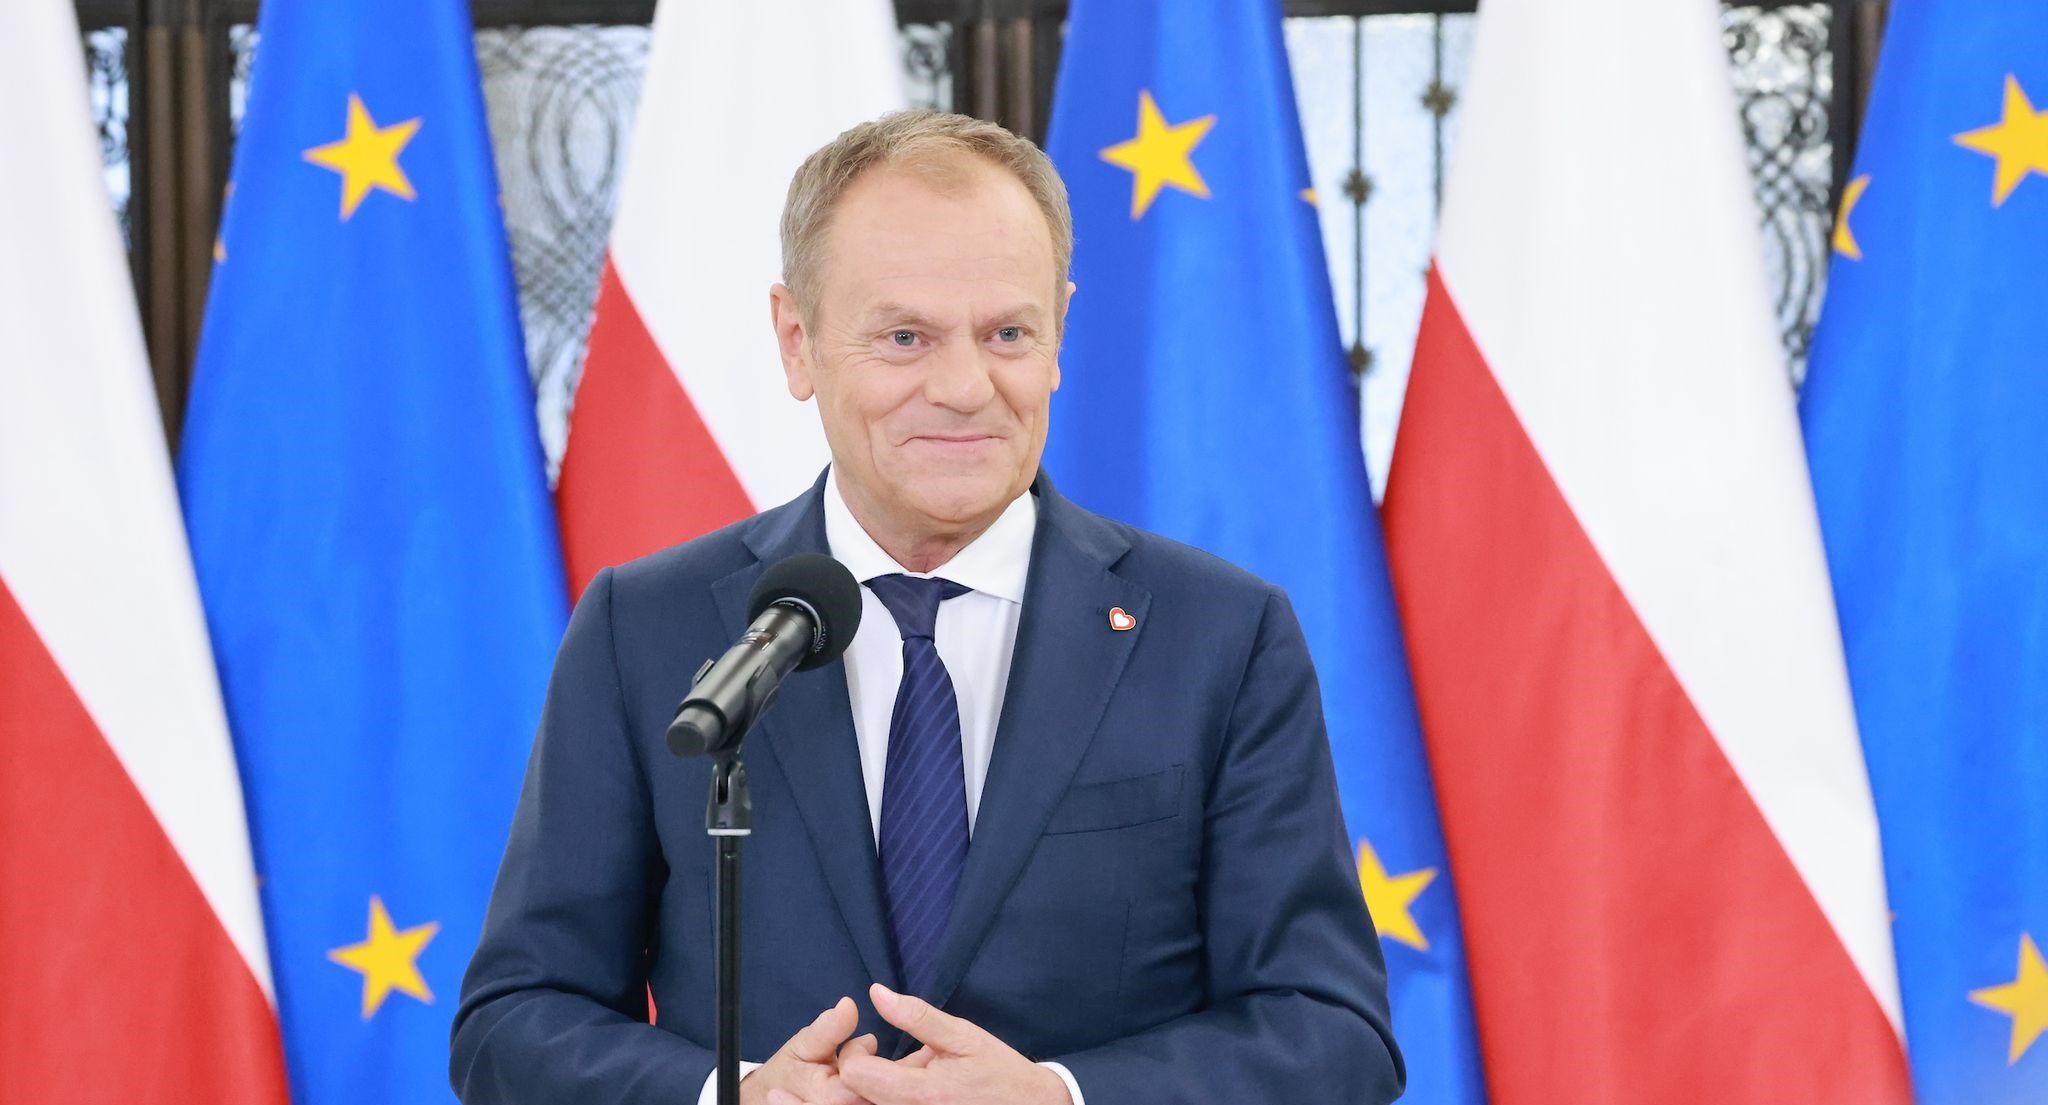 „Za pięć lat Polacy będą bogatsi od Wielkiej Brytanii” – obiecuje Tusk, wychwalając korzyści płynące z członkostwa w UE.